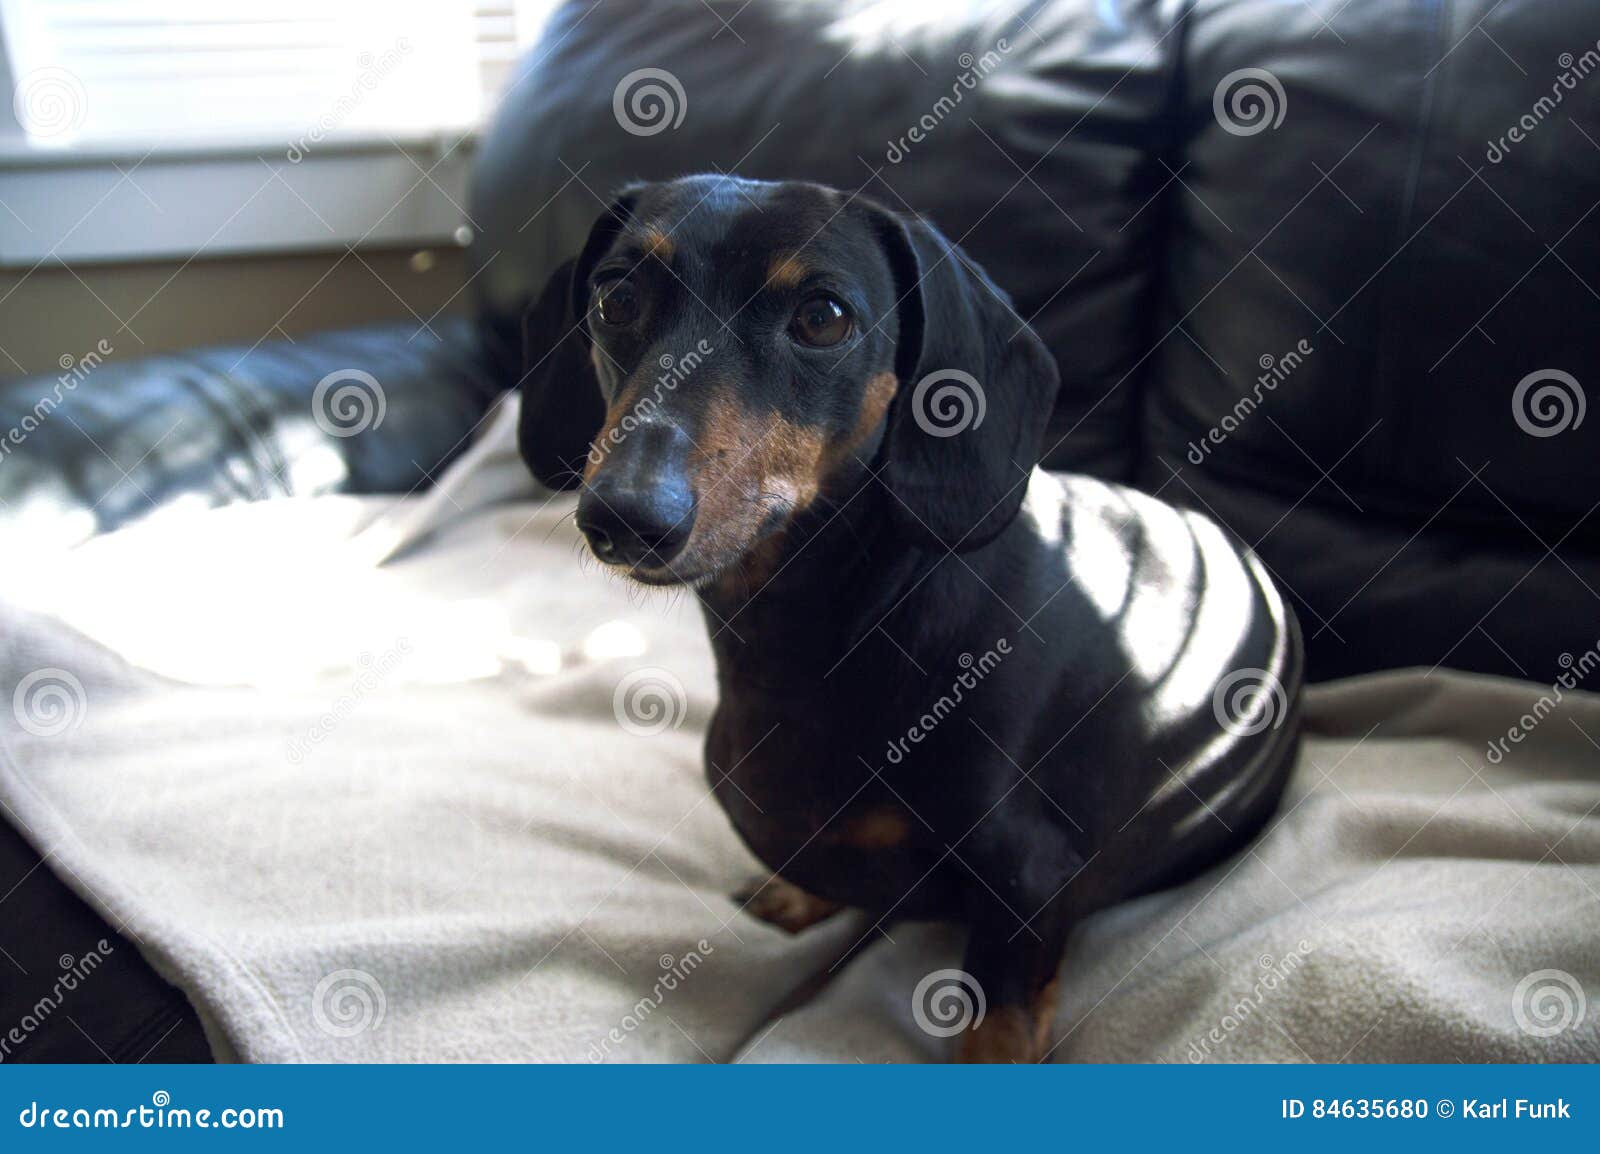 dachshund weiner dog puppy abstract bohkeh